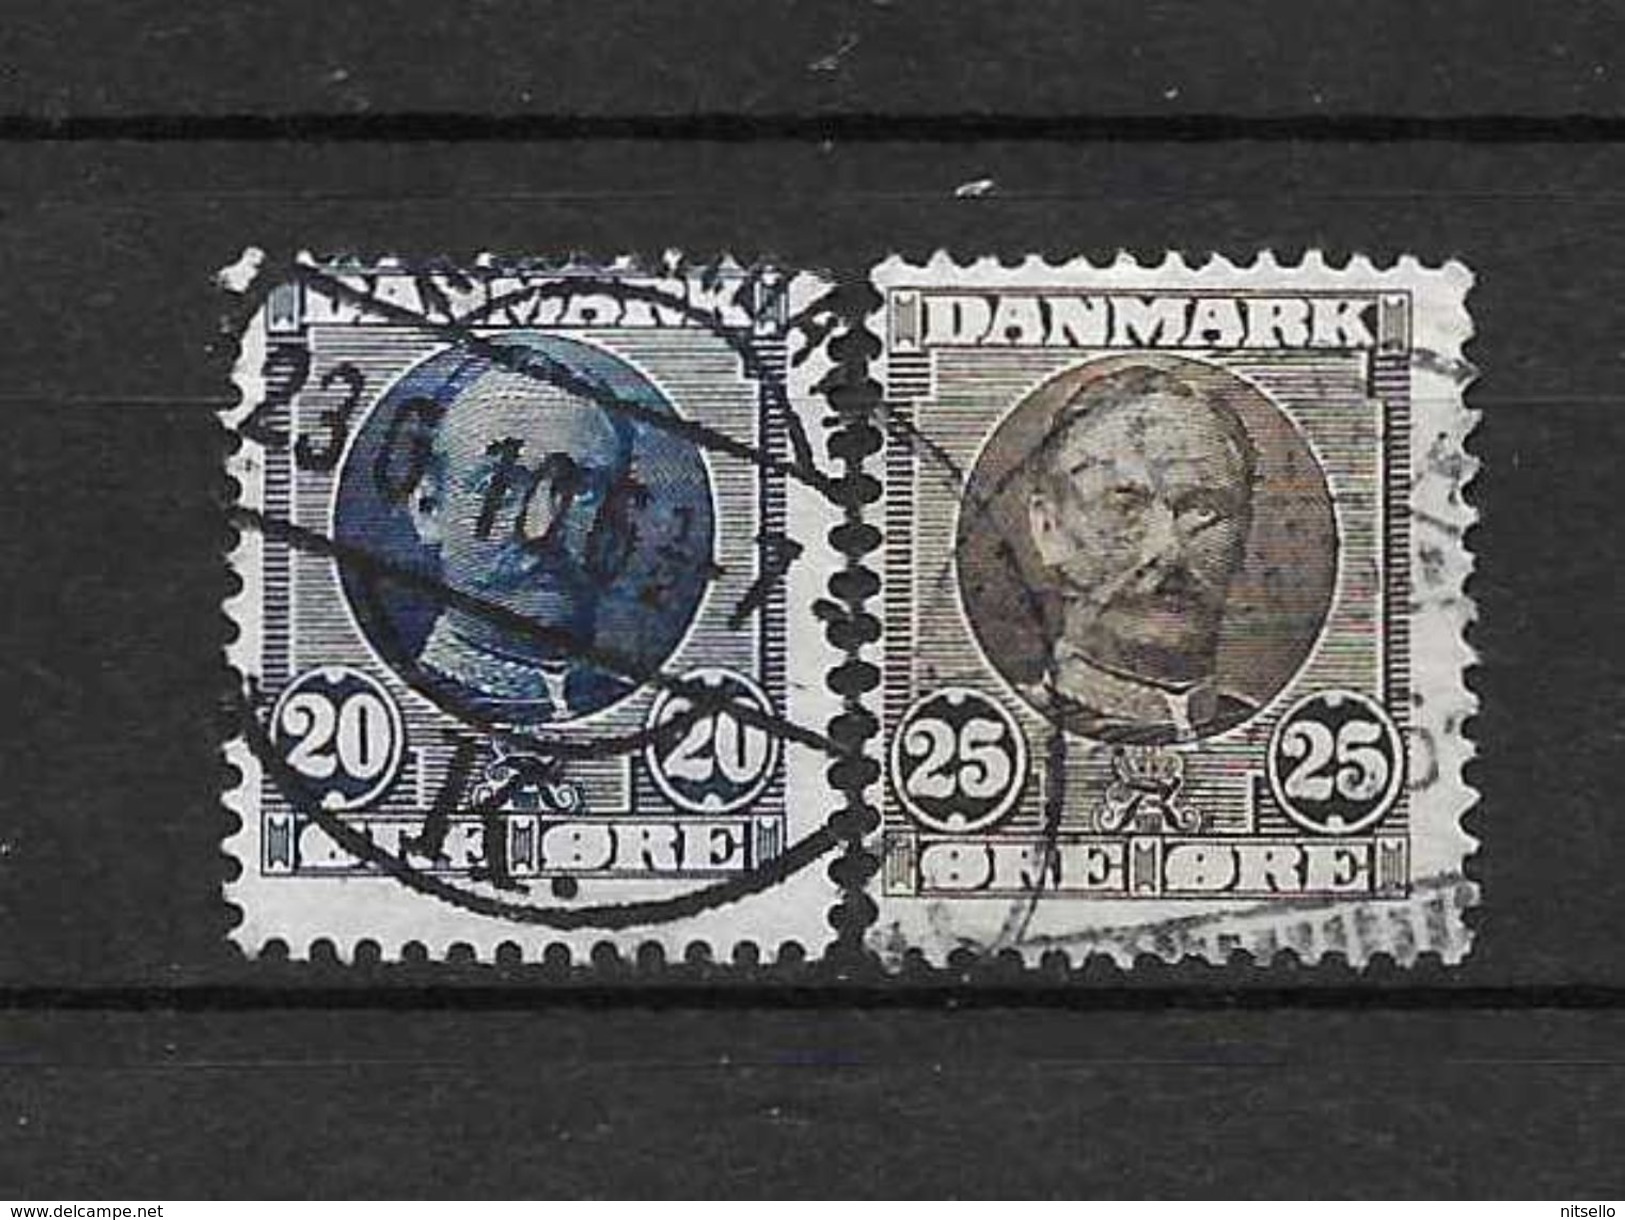 LOTE 1401  ///   DINAMARCA  1905    YVERT Nº: 57 Y 58        ¡¡¡¡¡ LIQUIDATION !!!!!! - Used Stamps